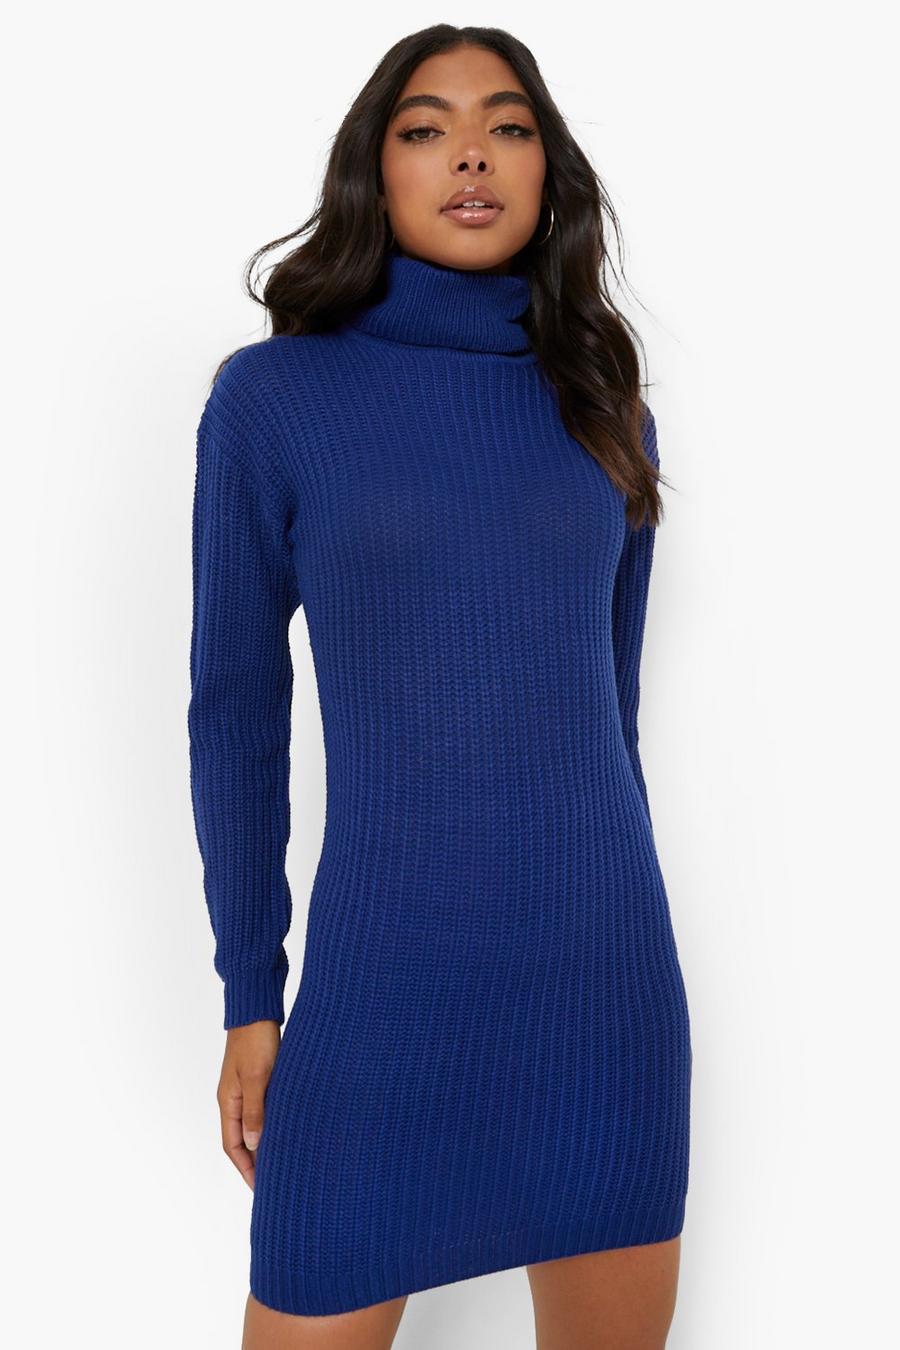 נייבי blu oltremare שמלת סוודר מבד ממוחזר עם צווארון נגלל, לנשים גבוהות